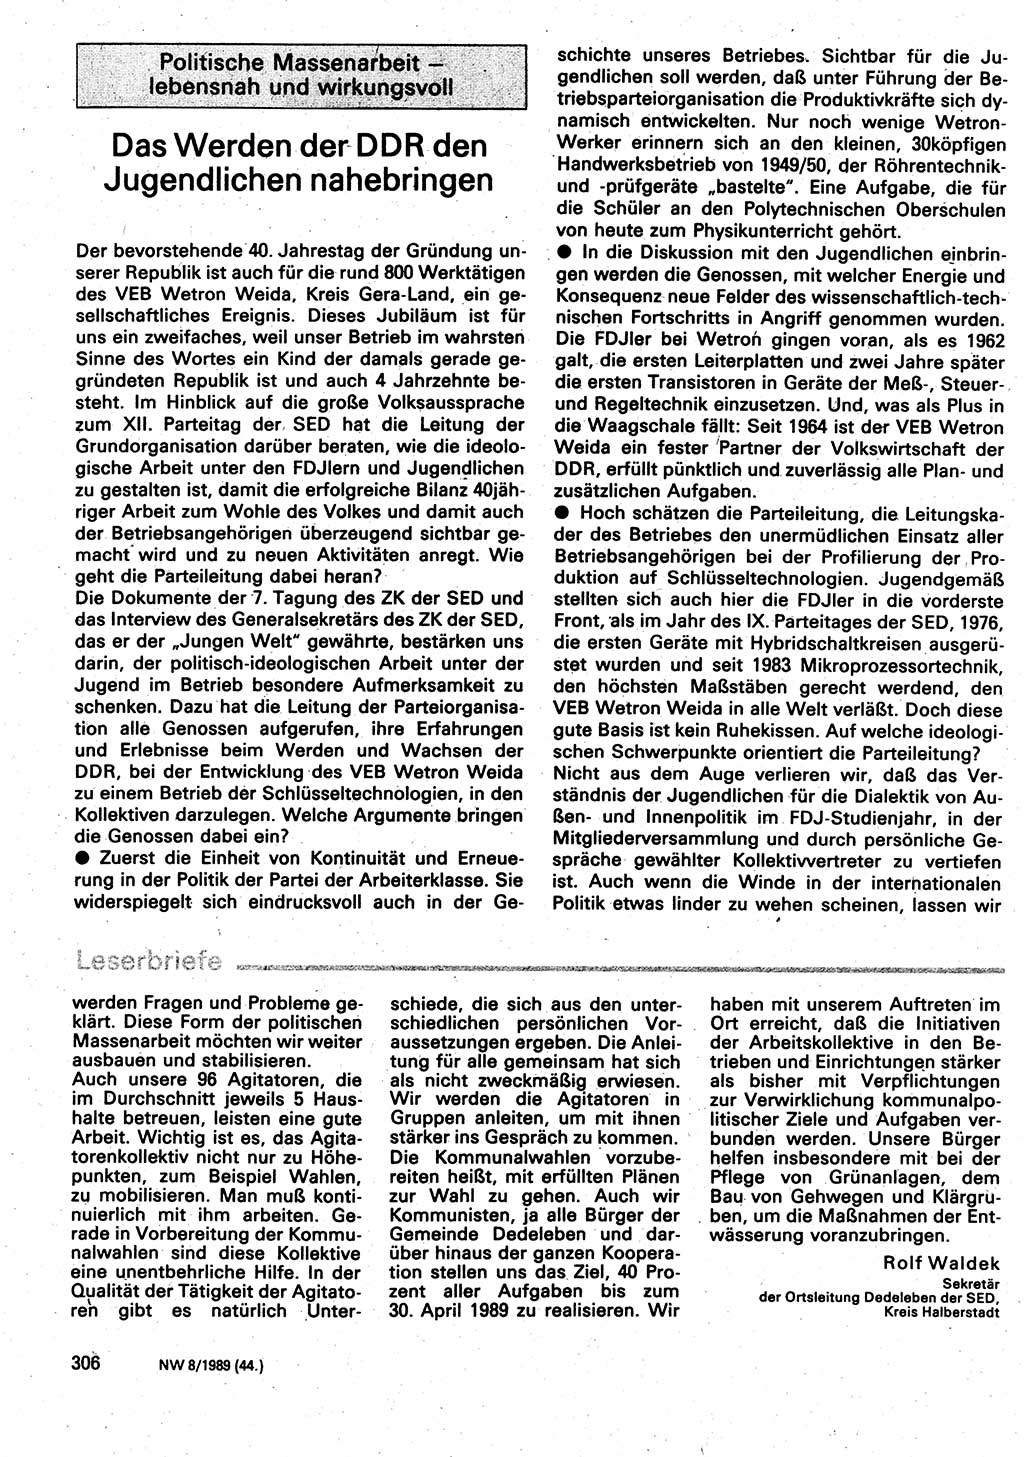 Neuer Weg (NW), Organ des Zentralkomitees (ZK) der SED (Sozialistische Einheitspartei Deutschlands) für Fragen des Parteilebens, 44. Jahrgang [Deutsche Demokratische Republik (DDR)] 1989, Seite 306 (NW ZK SED DDR 1989, S. 306)